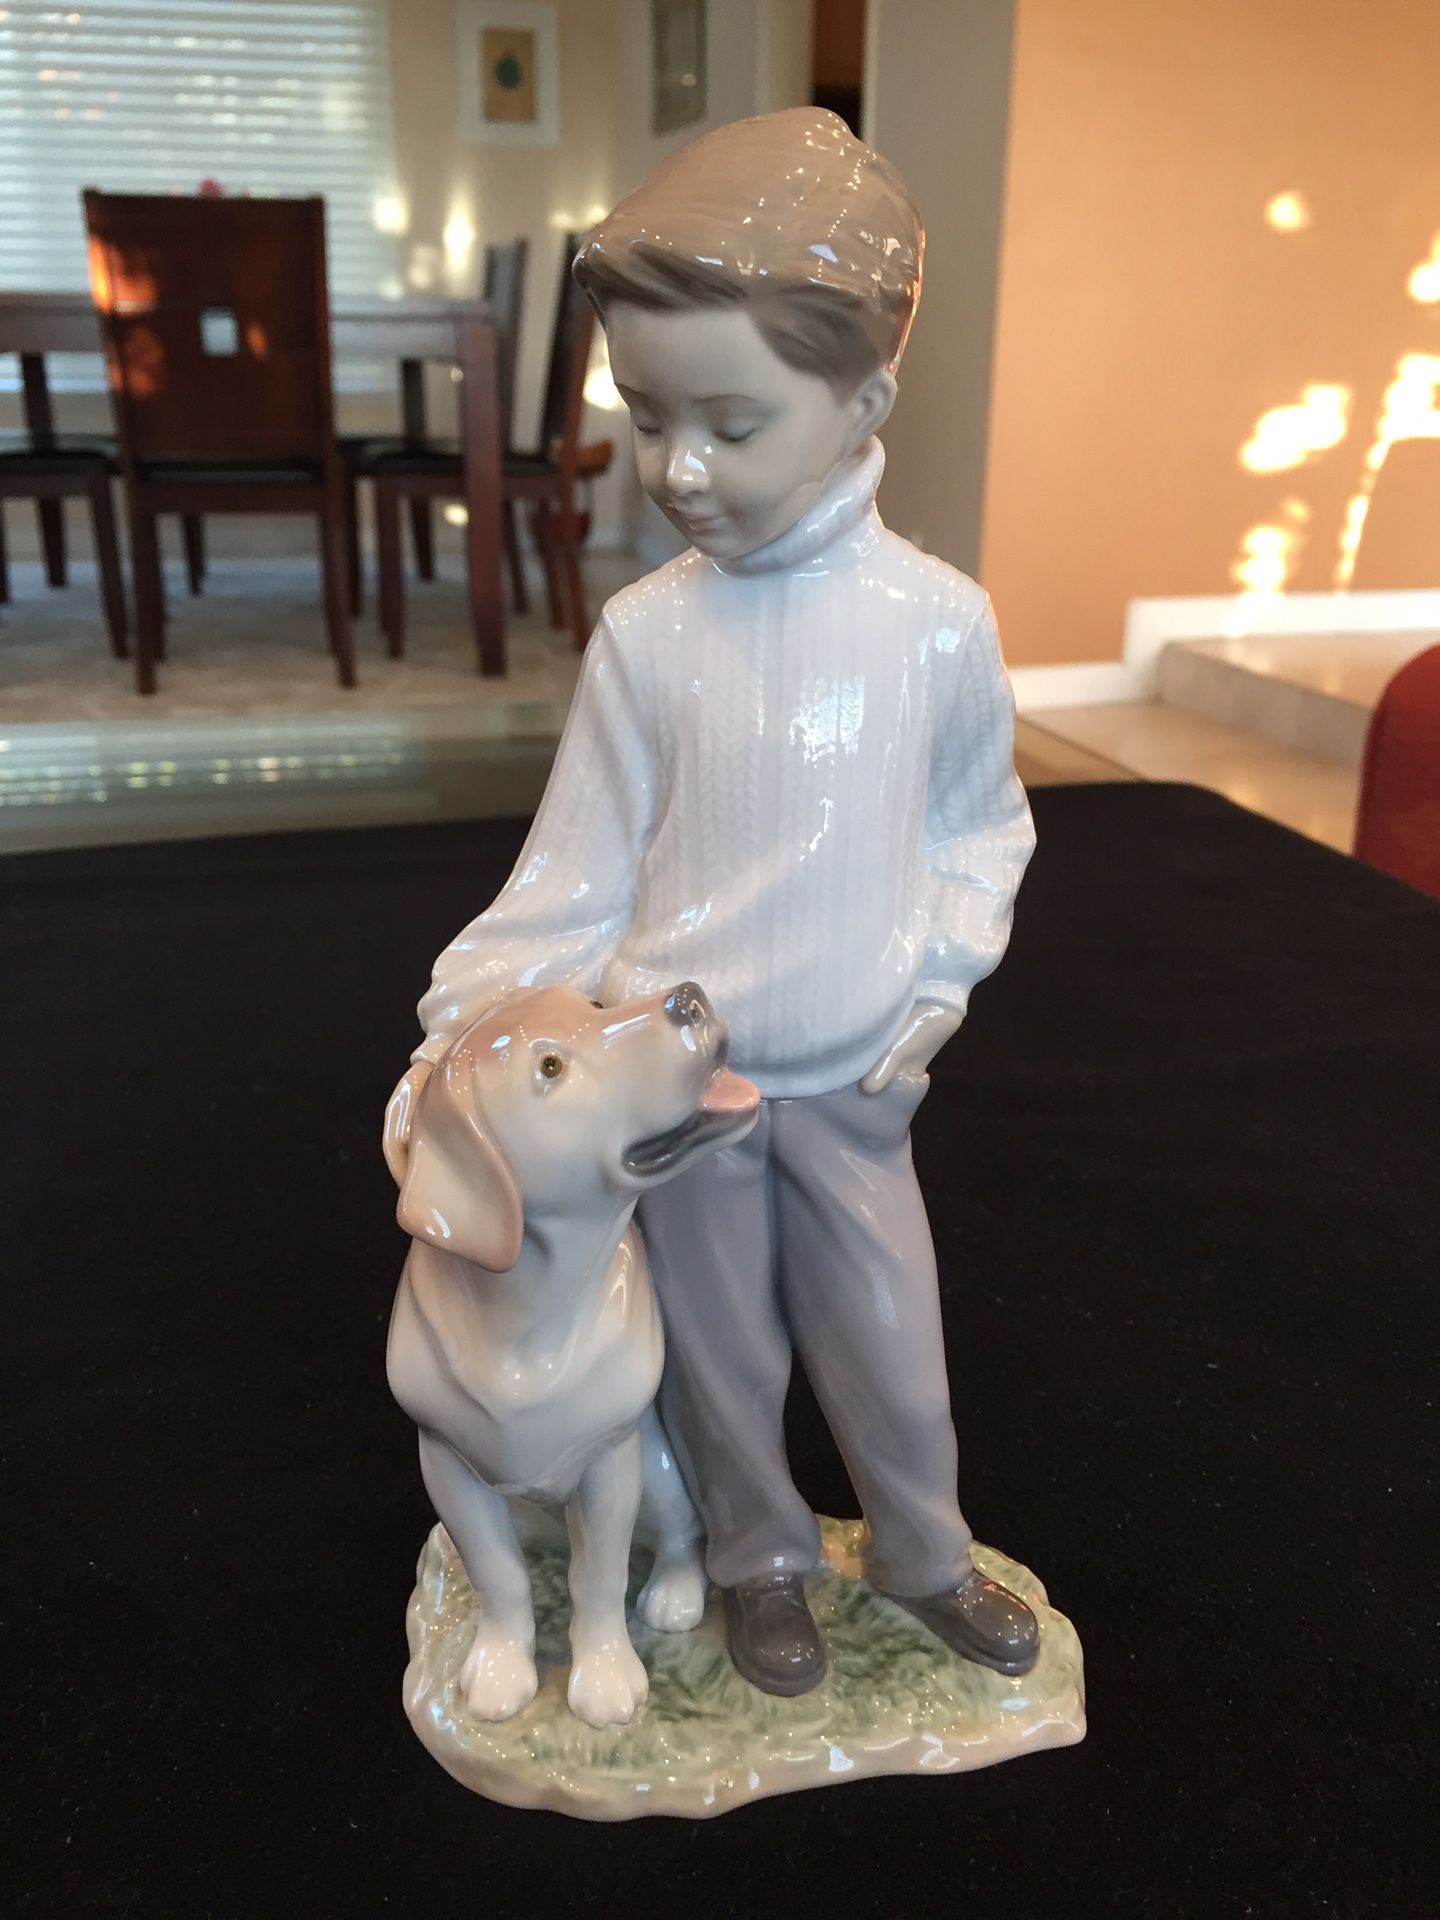 Lladro Boy with Dog Figurine